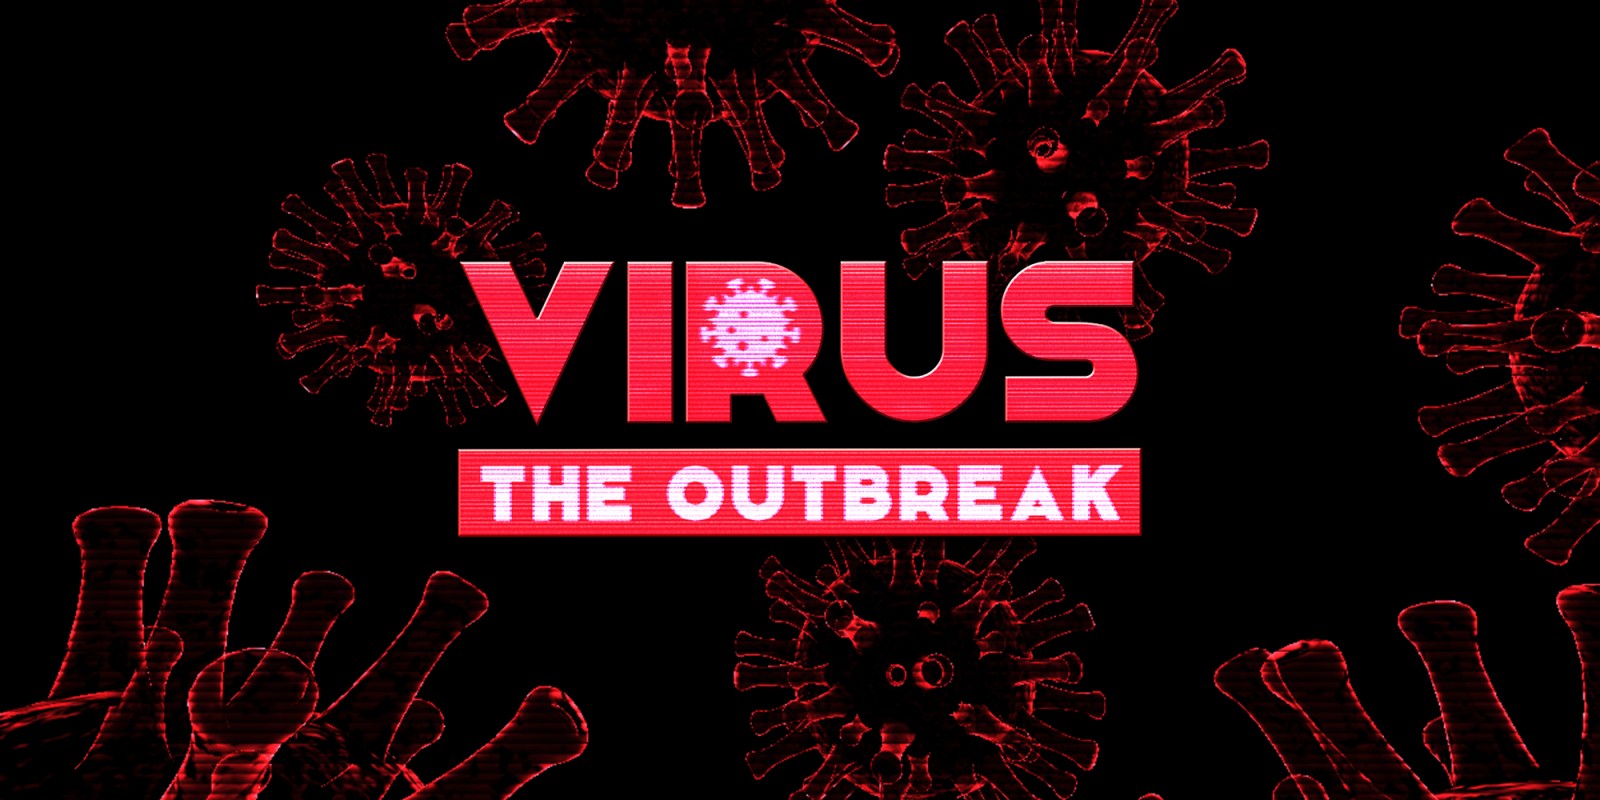 VIRUS: The Outbreak